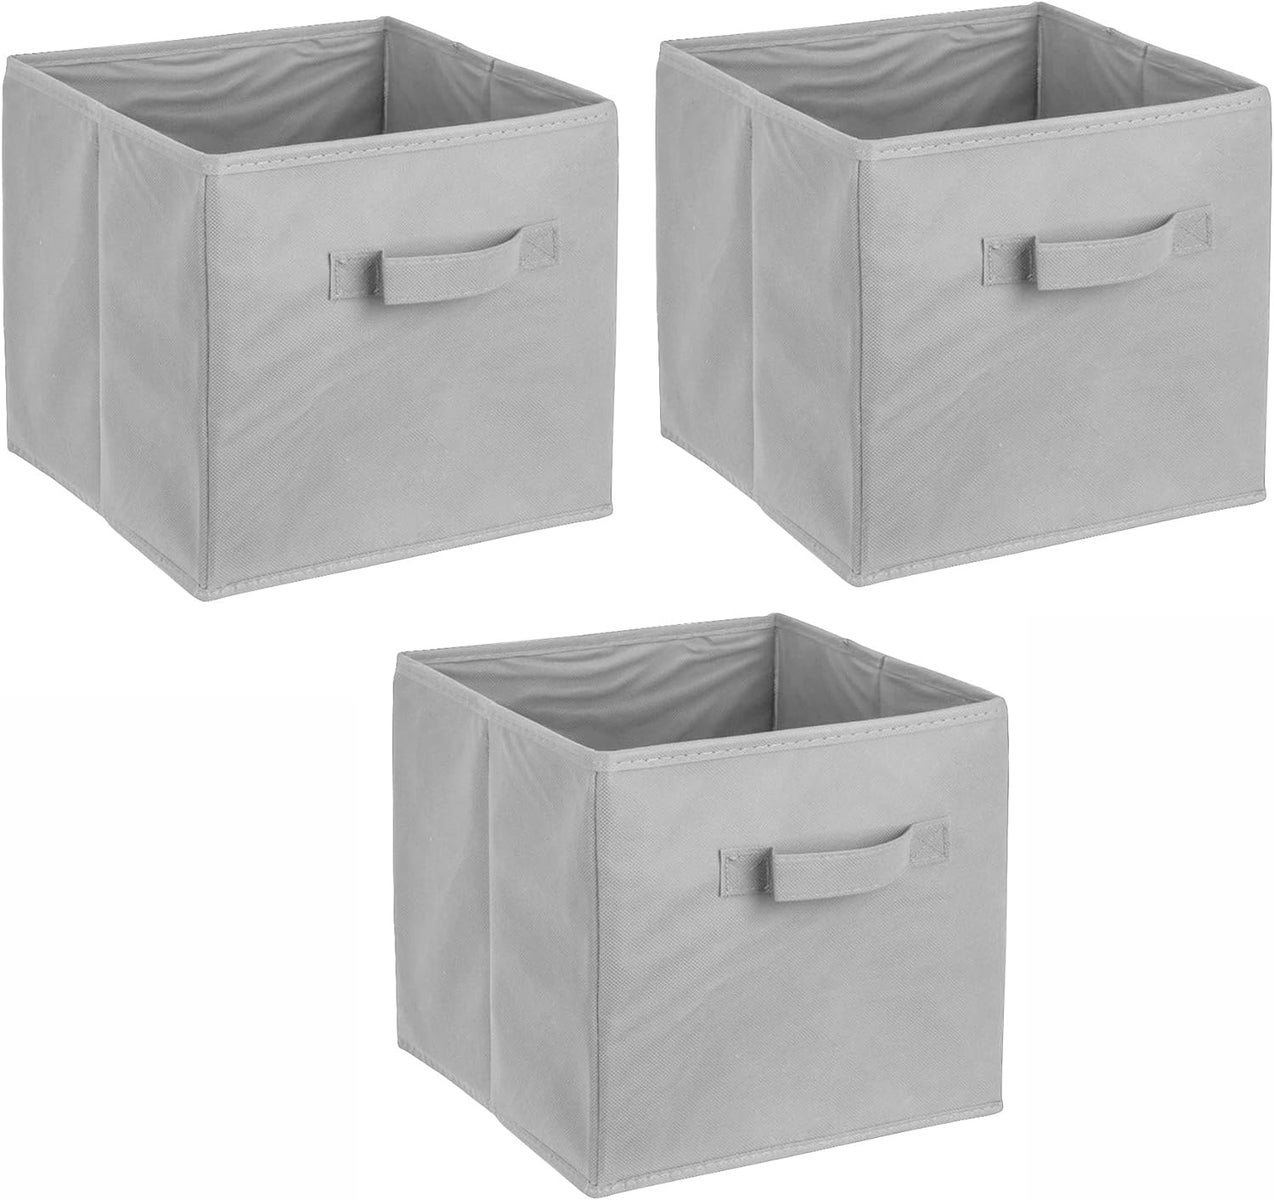 ADOB 3er Set Faltbox, Aufbewahrungsbox, Aufbewahrungskiste in Würfelform mit Griff, Farbe Grau